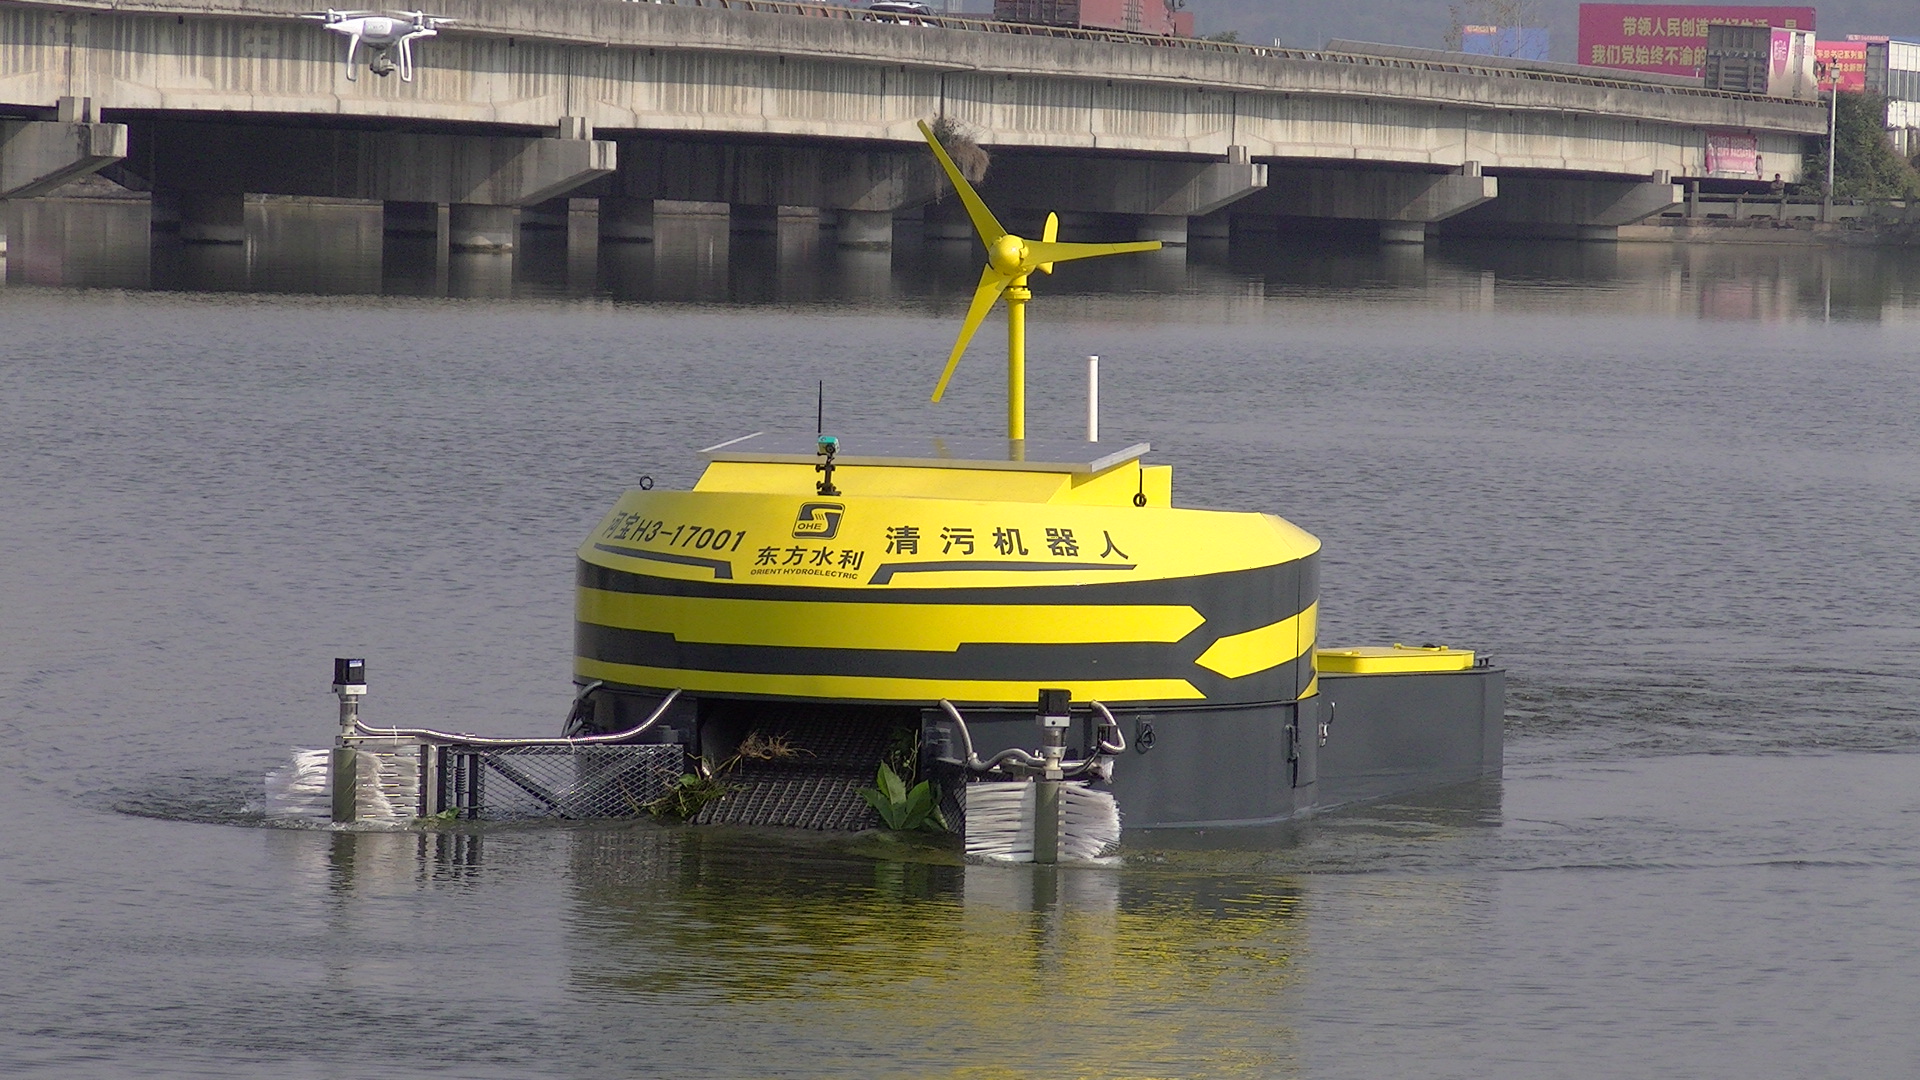 发明专利产品——H3型智能清污机器人（应用于水库、湖泊、城市河道等平静水面的轻型漂浮垃圾的清理，保持水面清净卫生。）.JPG